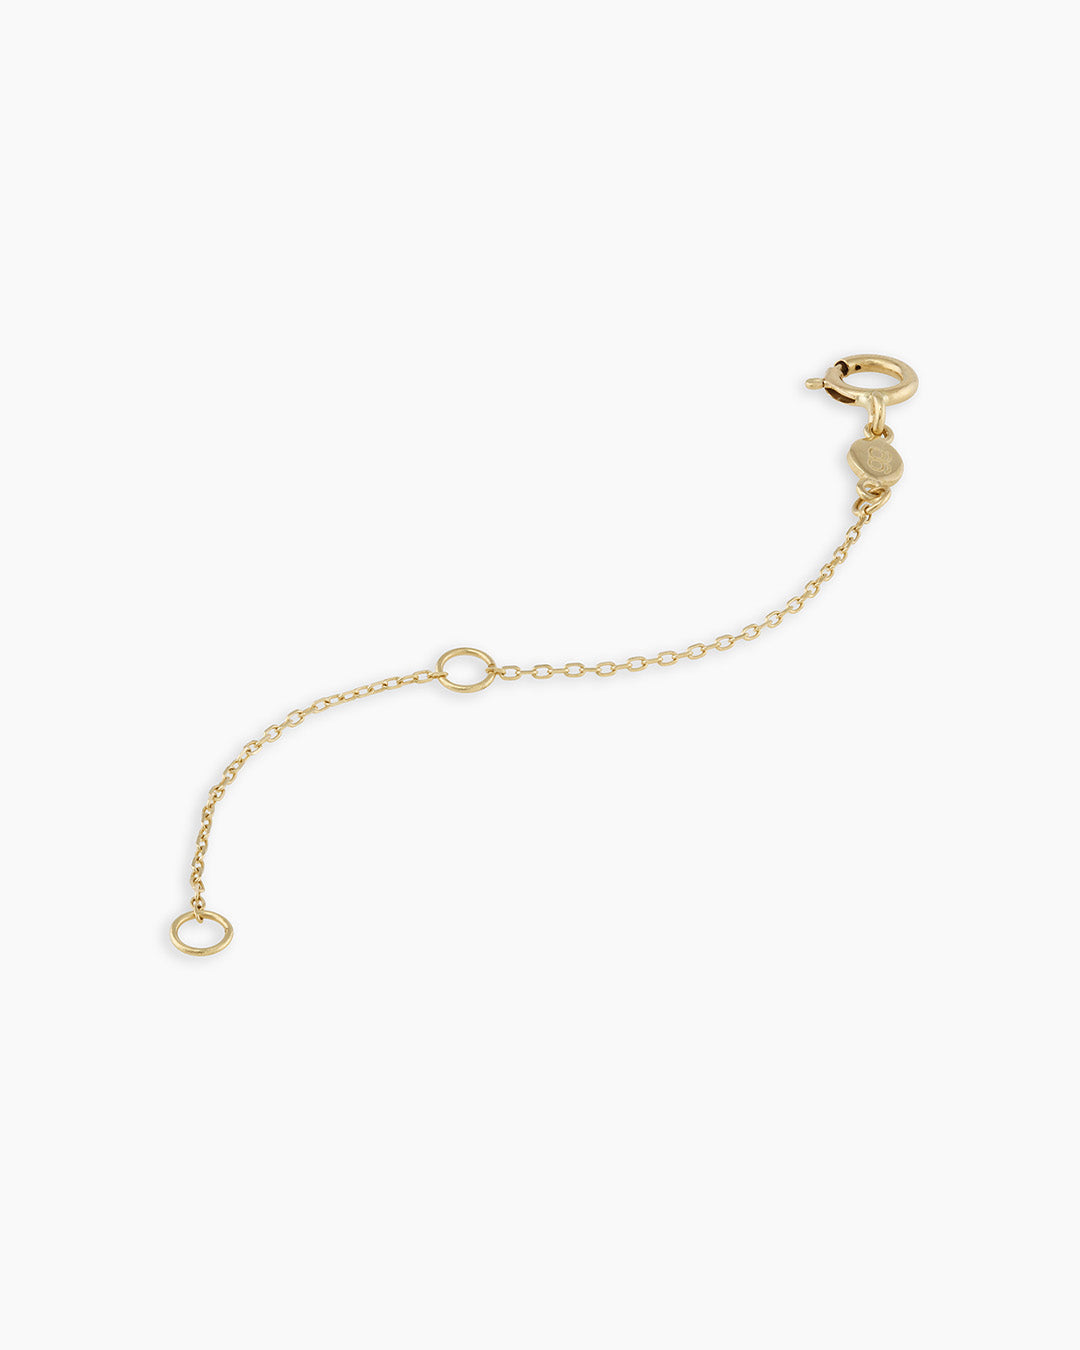  14k 18k Solid Gold Extender For Necklace or Bracelet